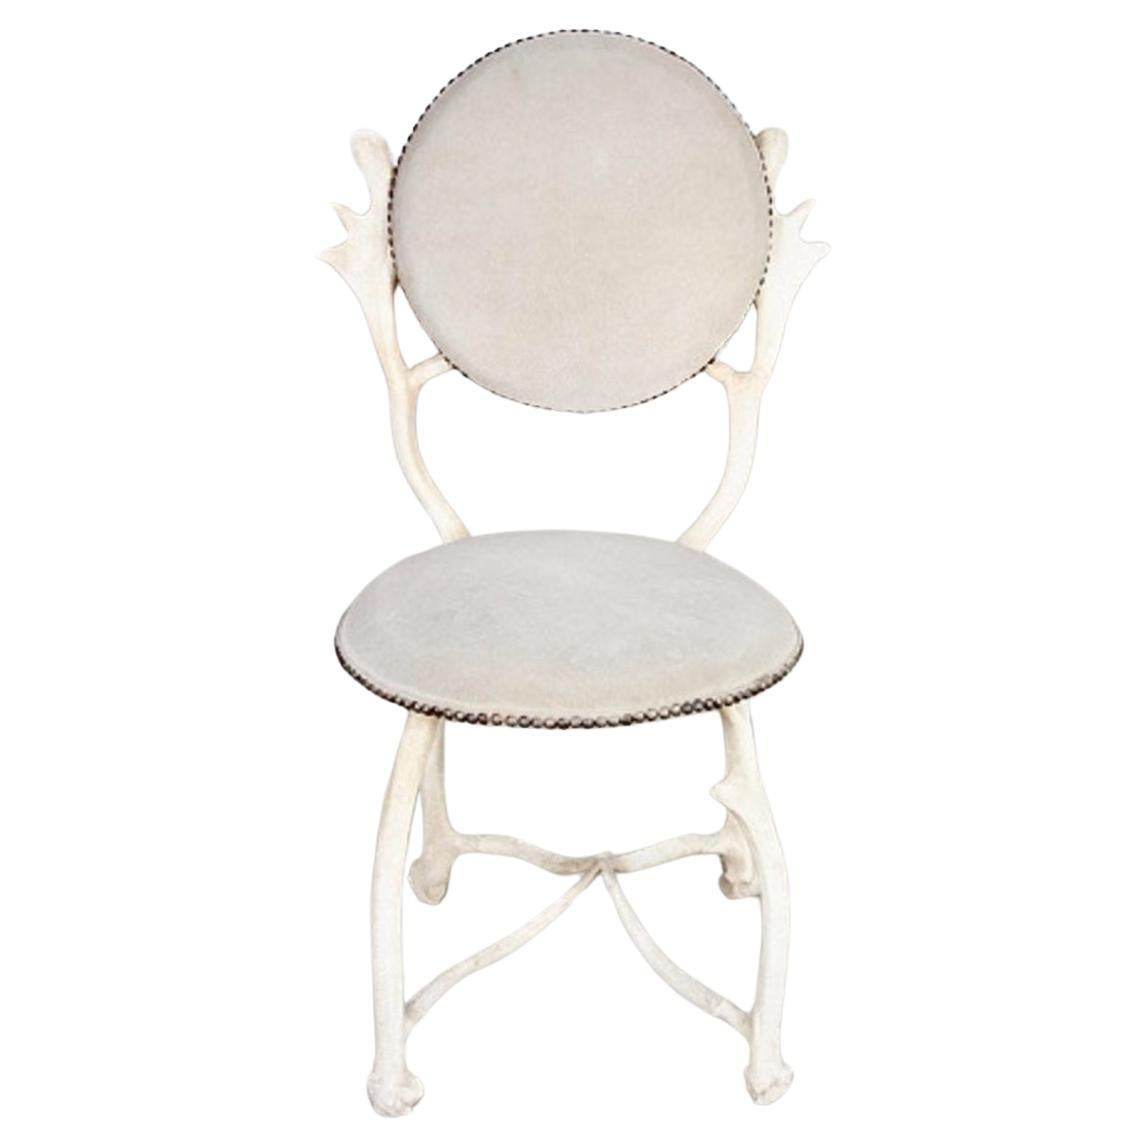 Il s'agit d'un bel exemple de chaise en bois d'Arthur Court. La chaise date des années 1970 et est dans l'ensemble en très bon état d'origine avec un cadre en aluminium peint en blanc en faux bois de cerf et un rembourrage en daim. La chaise